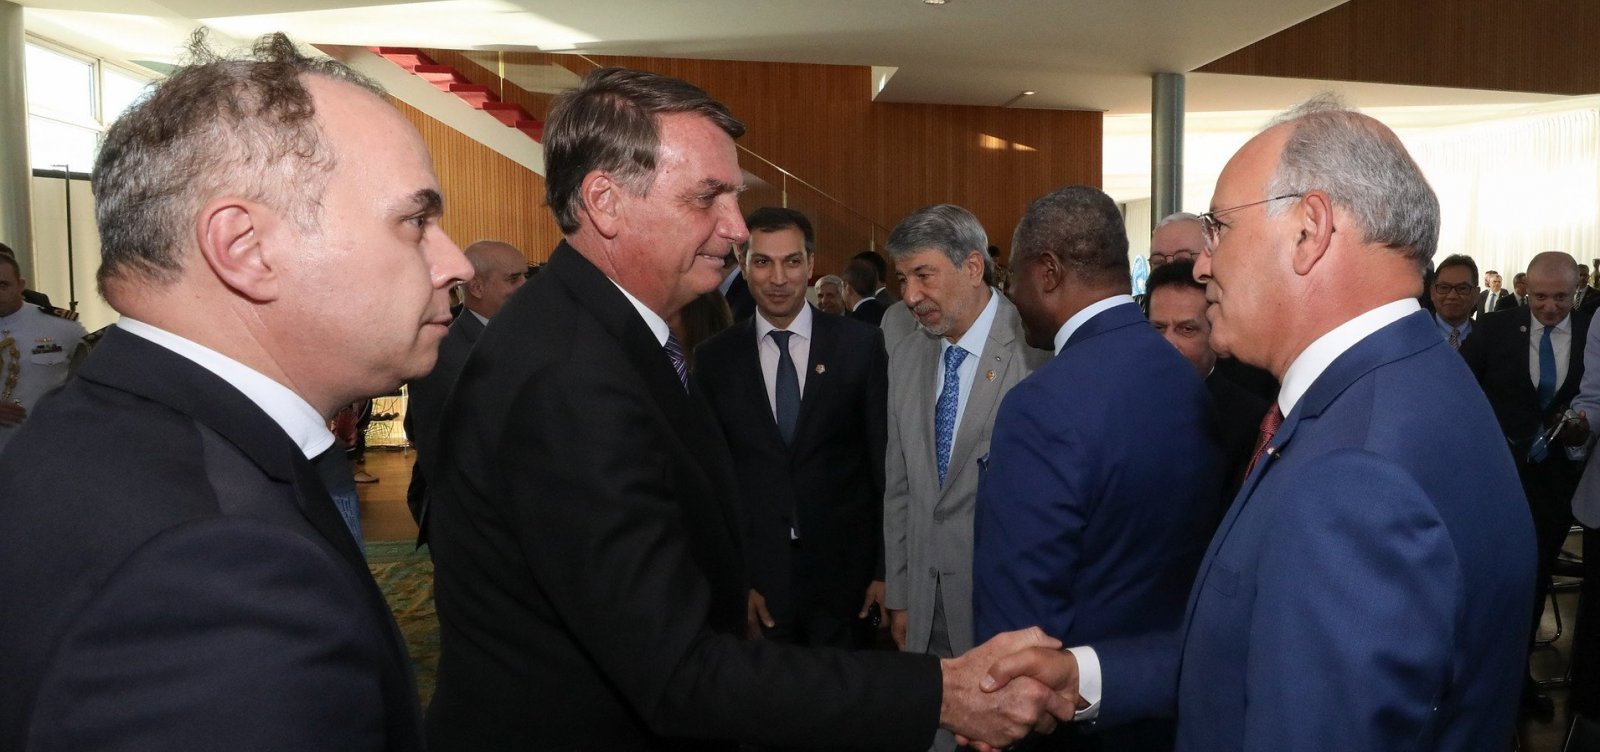 Defesa de Bolsonaro diz ao TSE que encontro com embaixadores não teve caráter eleitoral